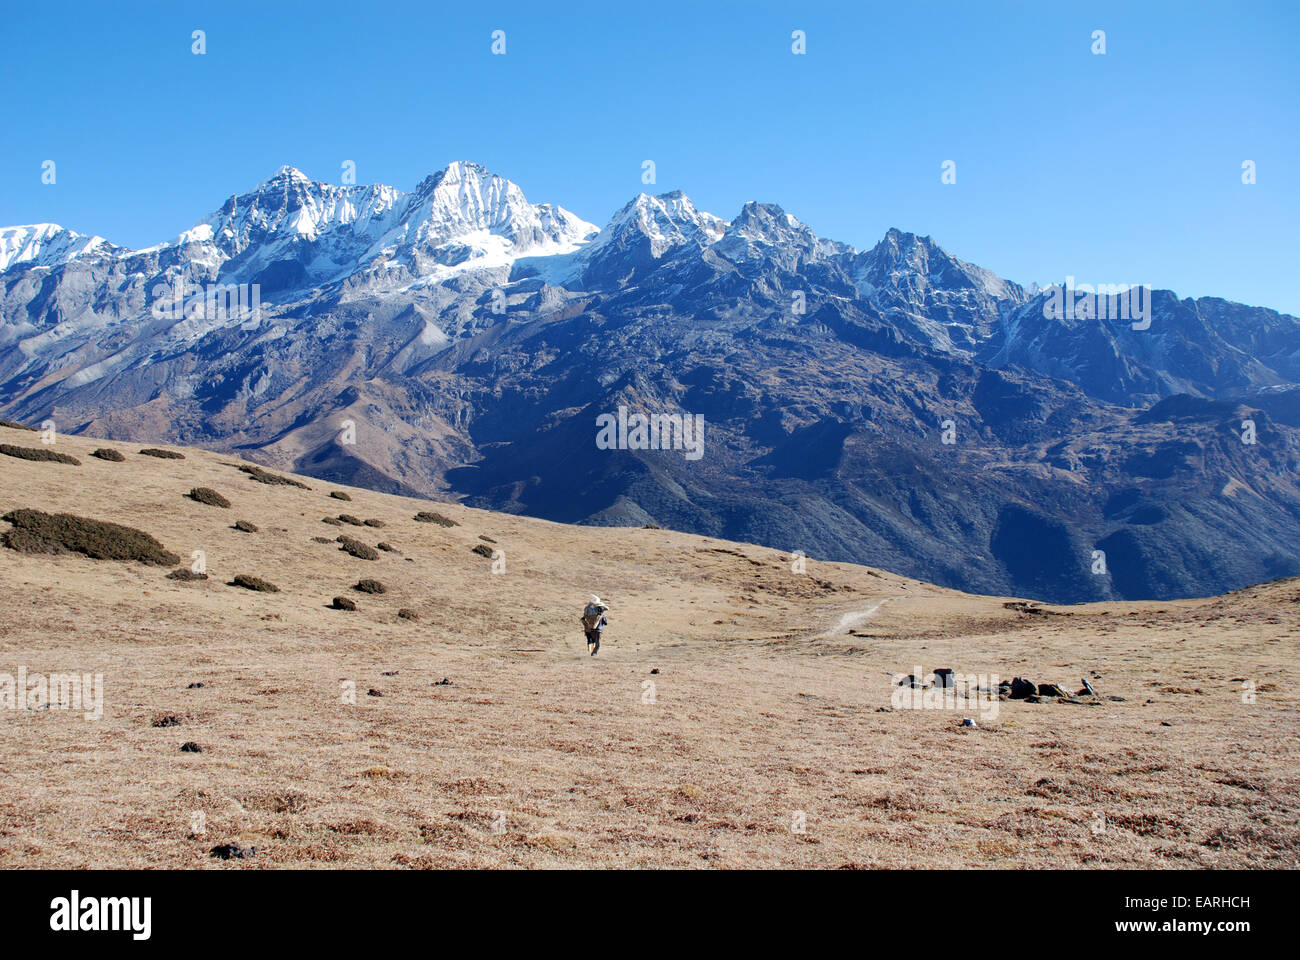 Un porteur se dirige vers les sommets du haut Himalaya Kangchenjunga à proximité dans l'état indien du Sikkim Banque D'Images